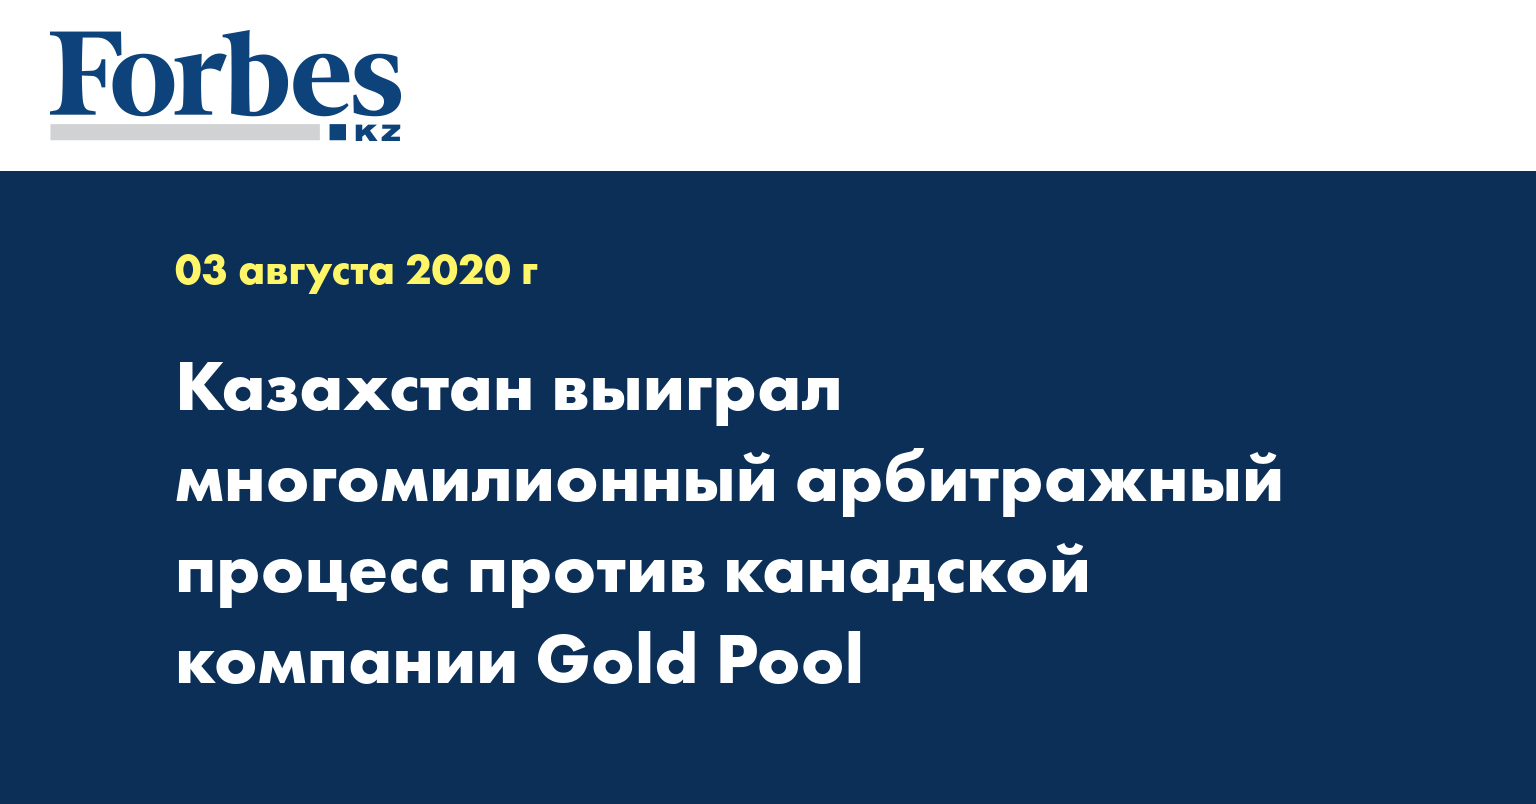 Казахстан выиграл многомилионный арбитражный процесс против канадской компании Gold Pool